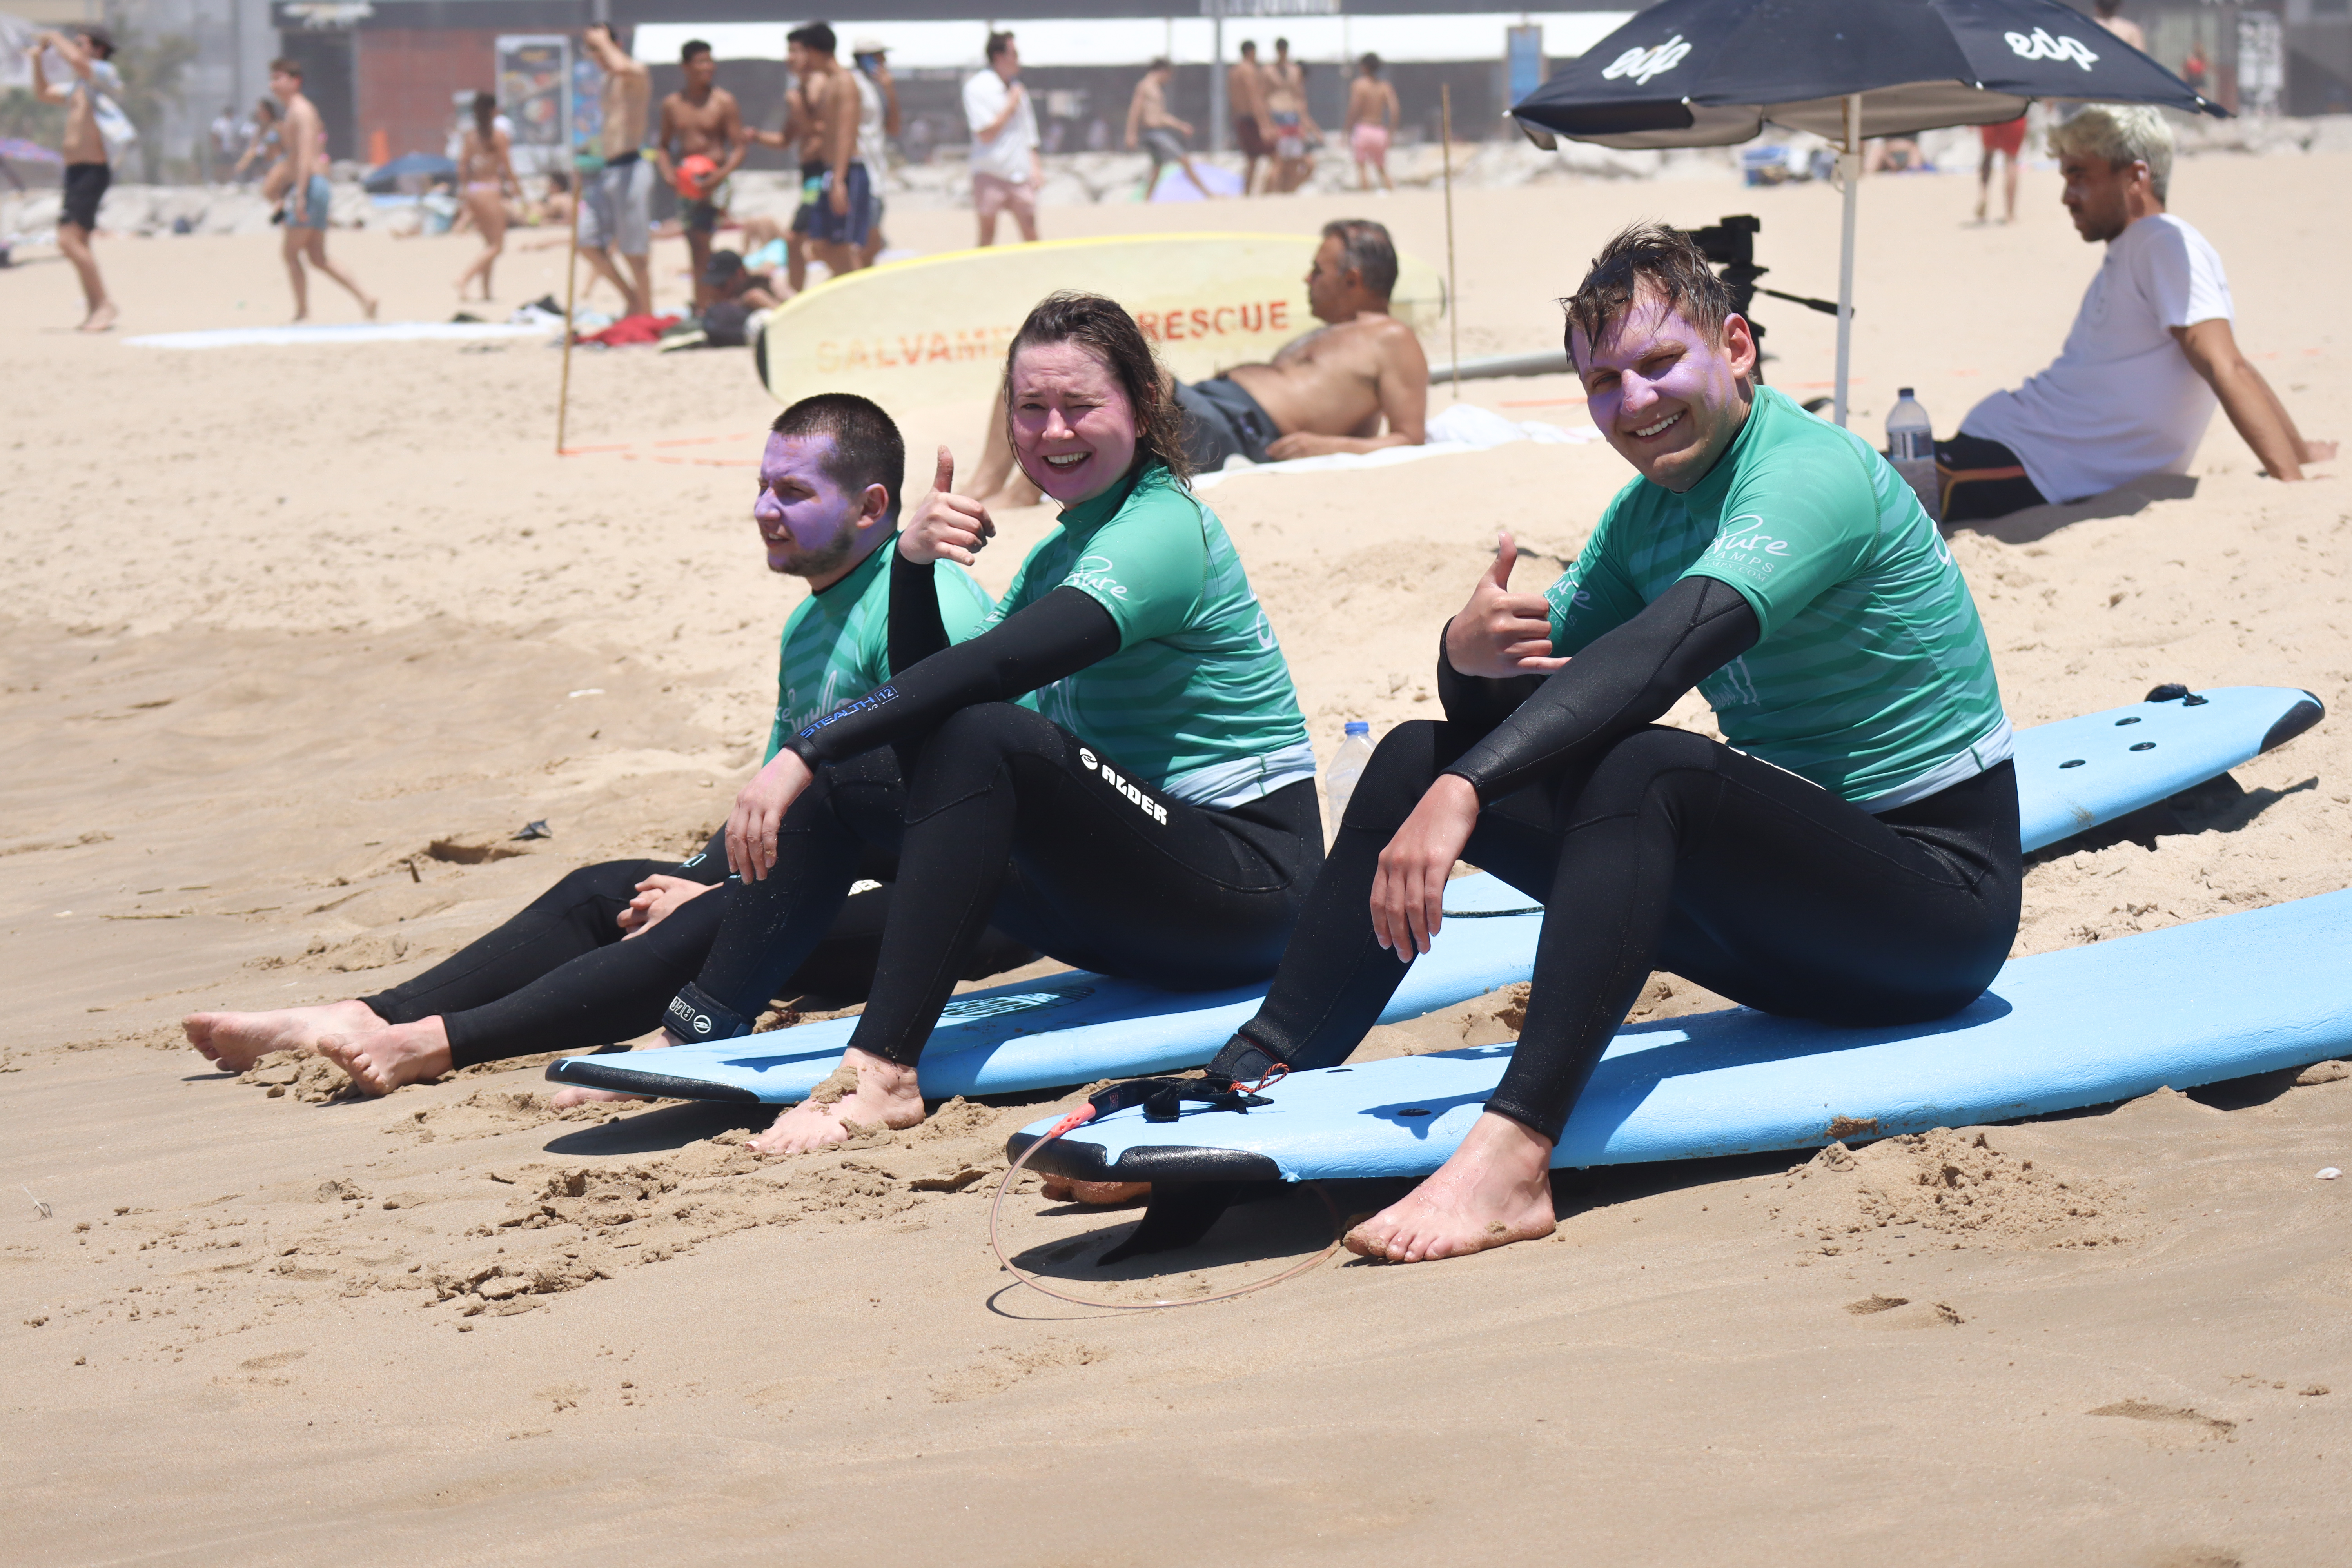 Obozy surfingowe, surf camps po trzydziestce - surfing dla dorosłych